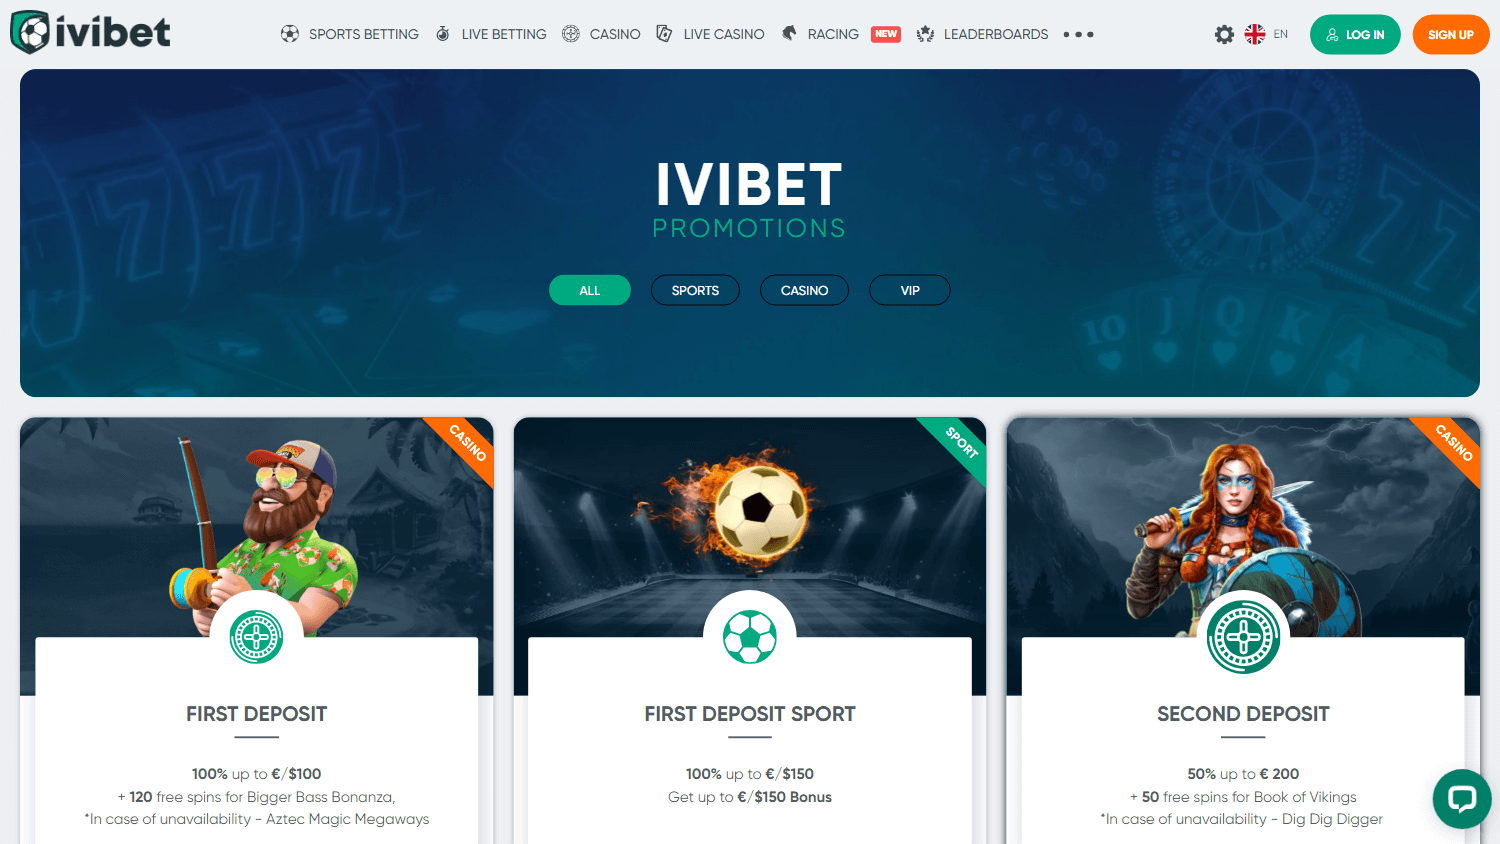 ivibet_casino_promotions_desktop